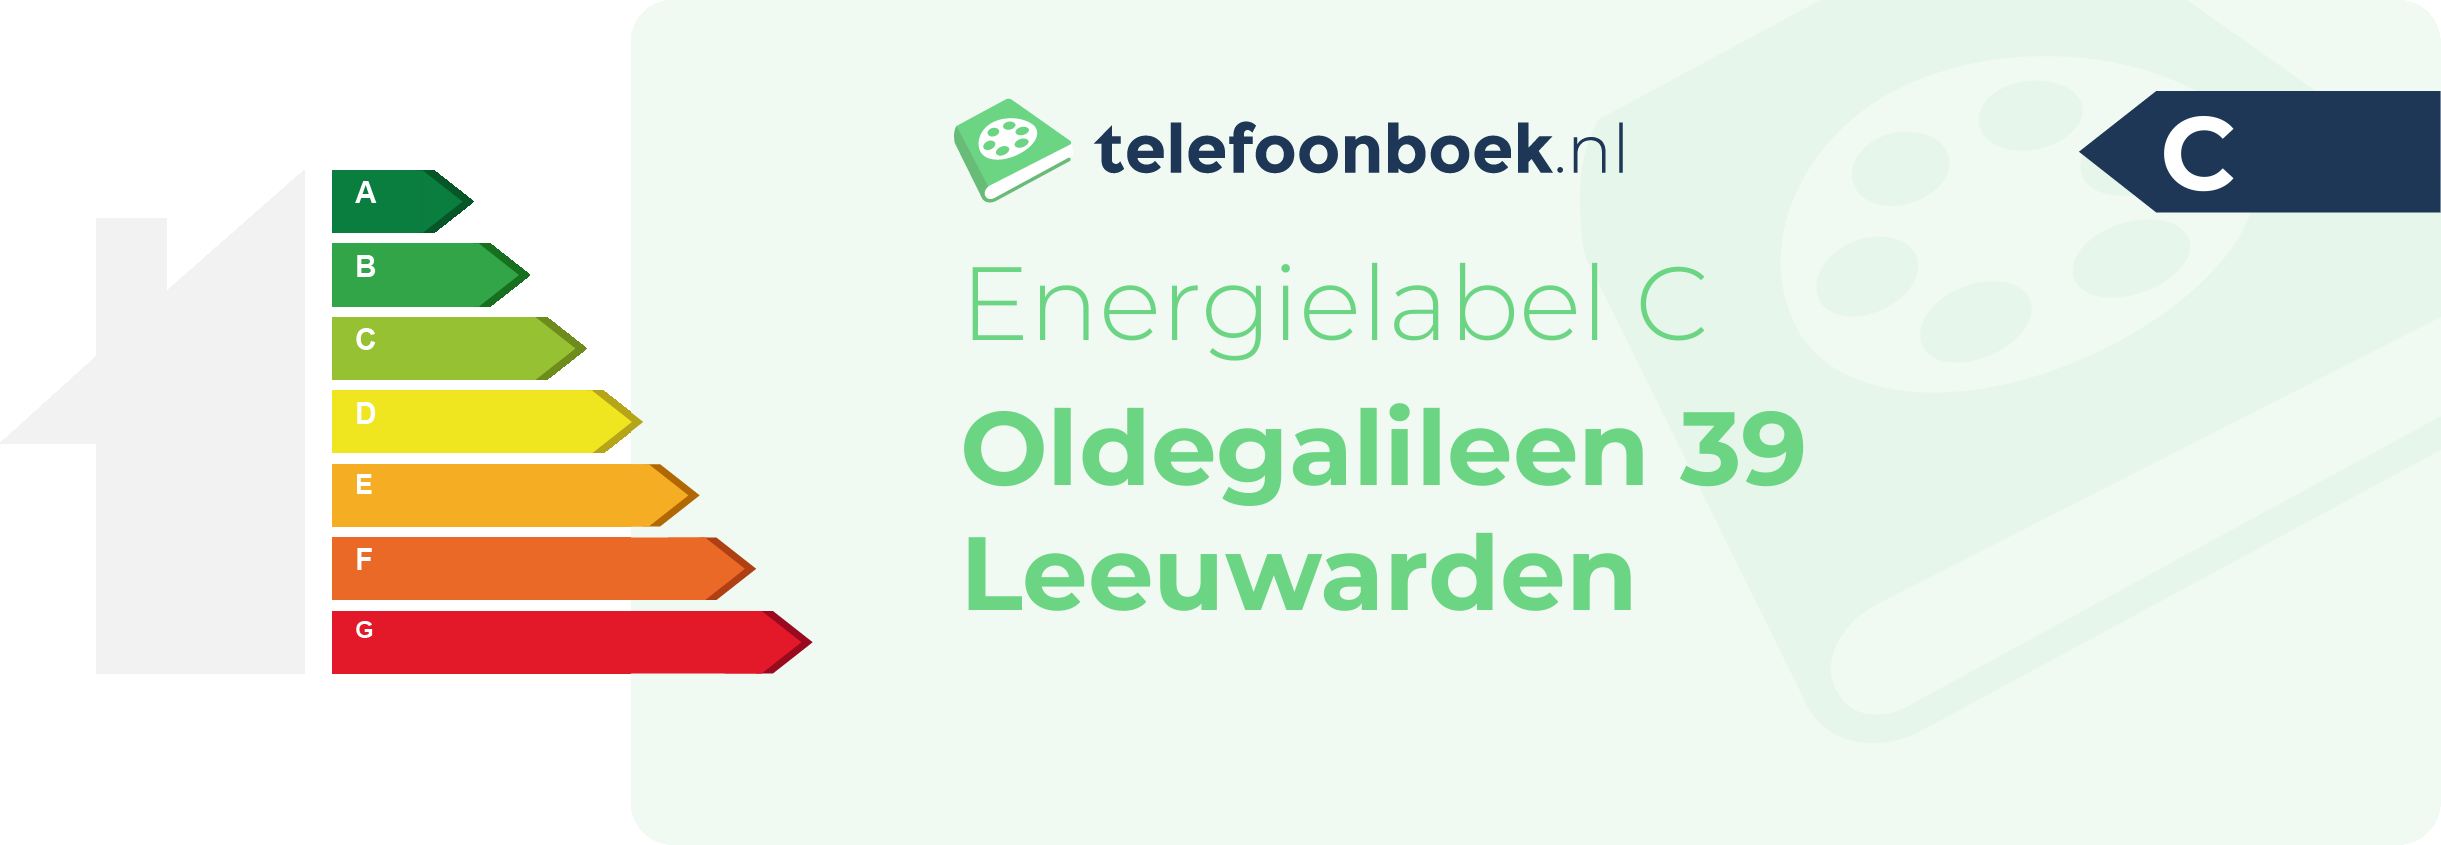 Energielabel Oldegalileen 39 Leeuwarden